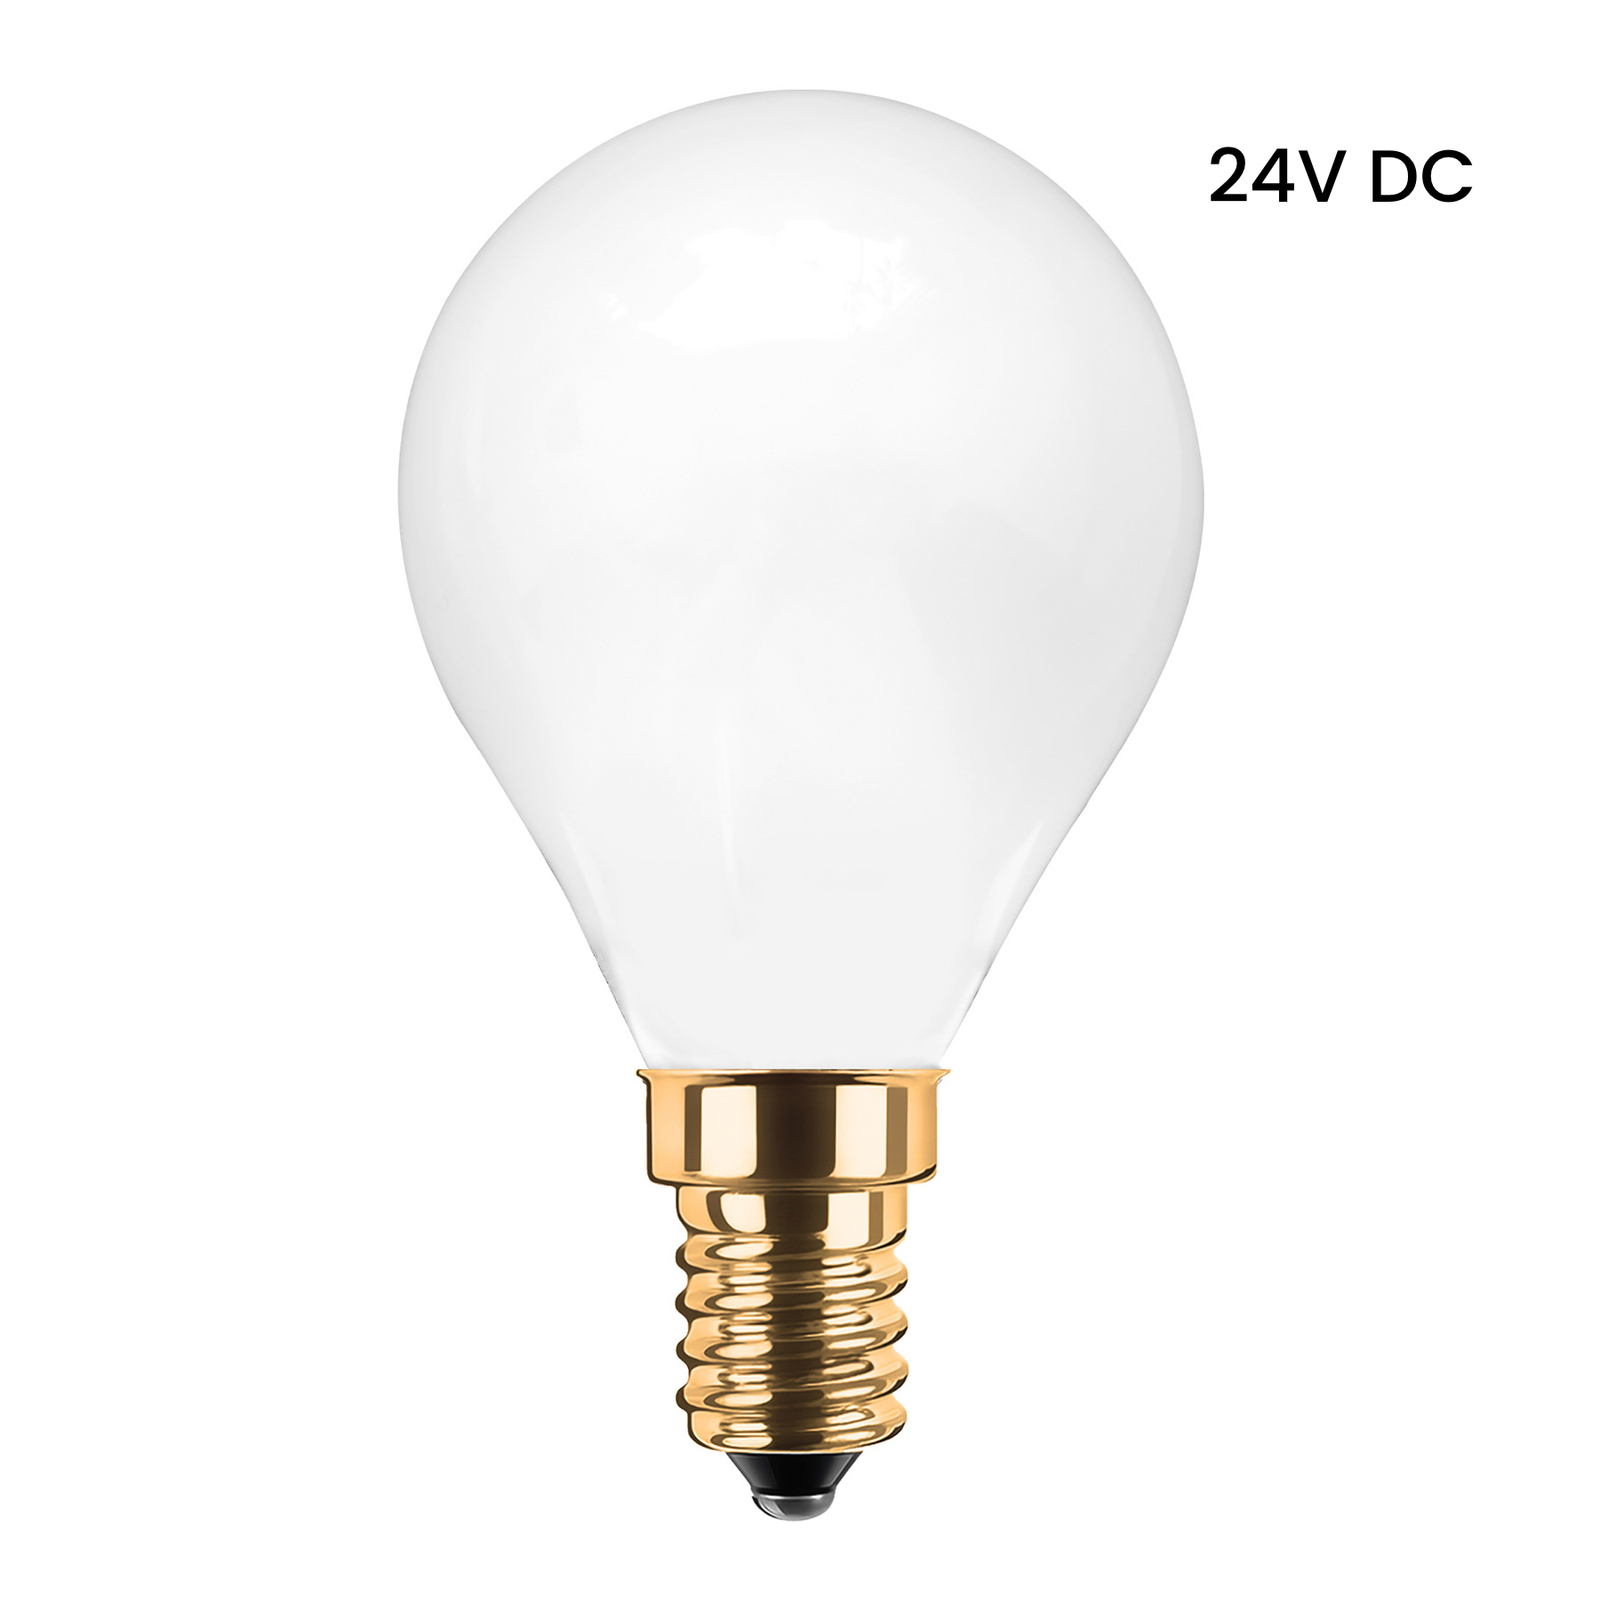 Segula LED druppellamp 24V DC E14 3W 922 opaal dimmer